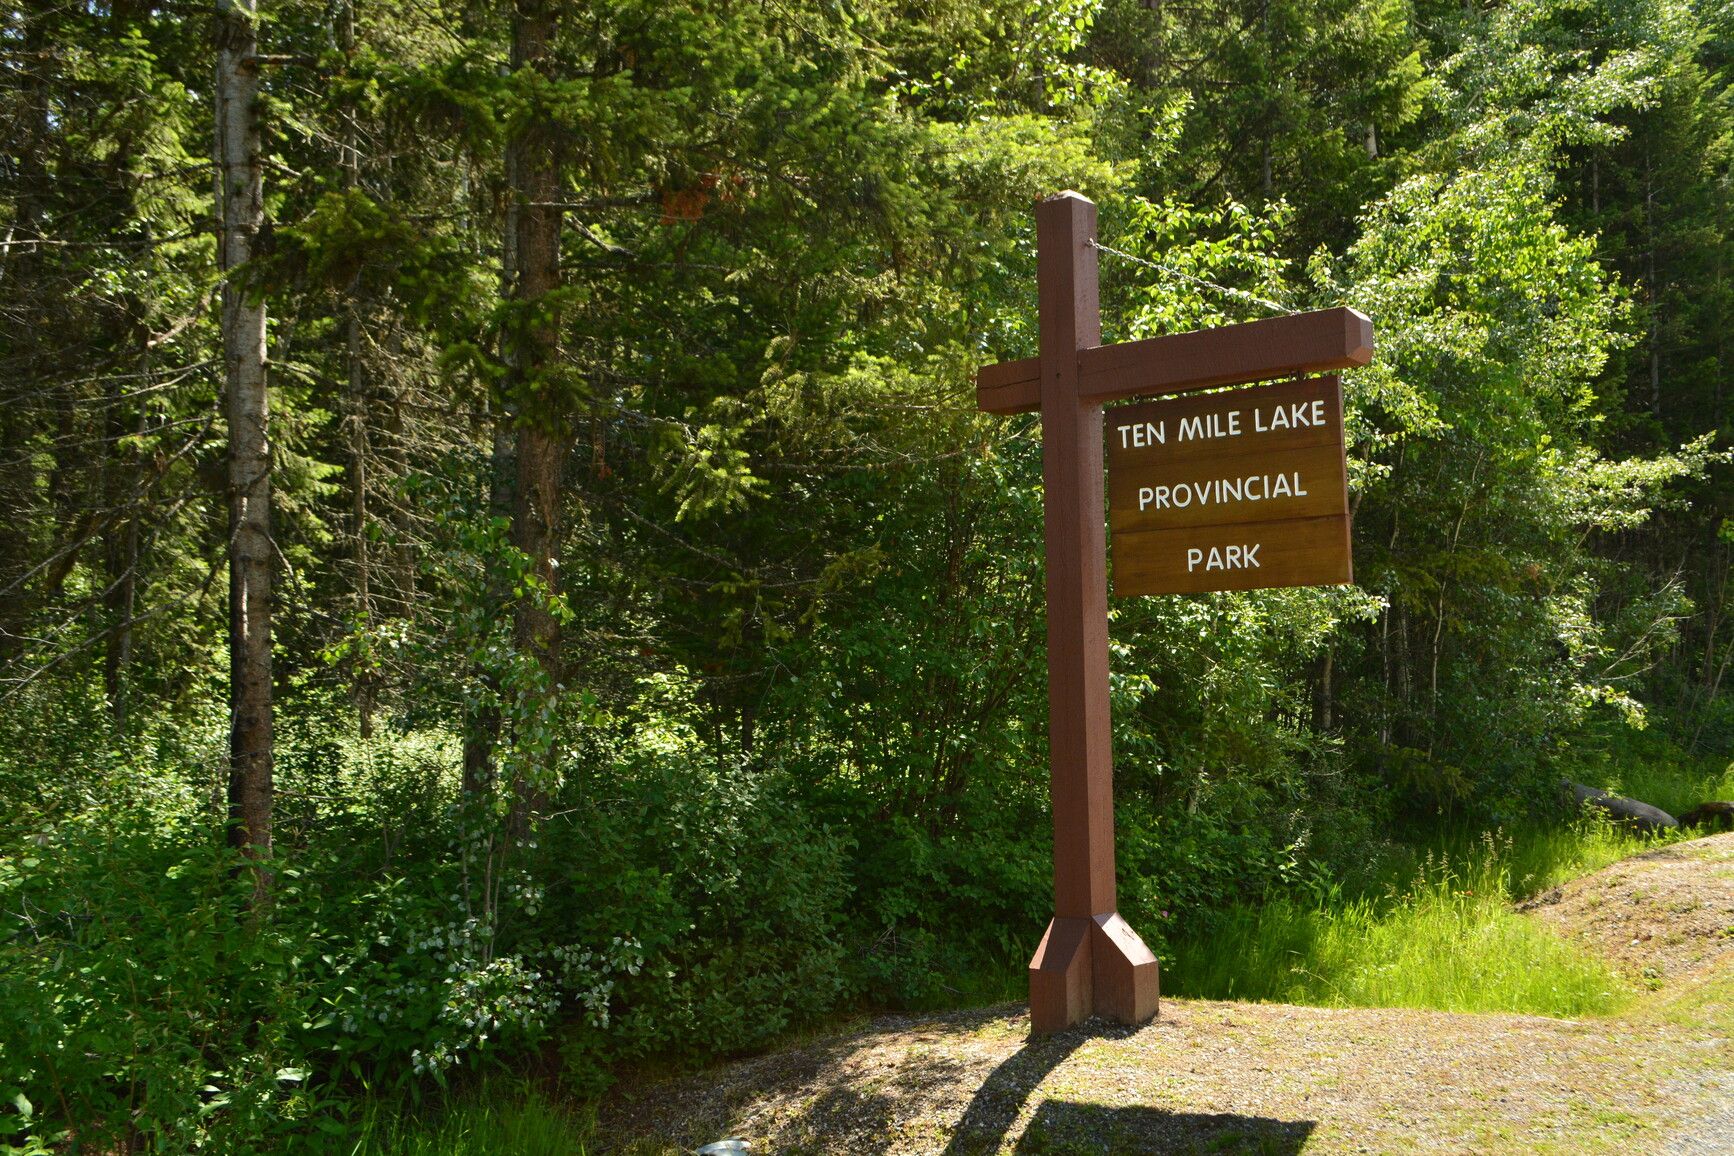 Ten Mile Lake Provincial Park entrance sign.